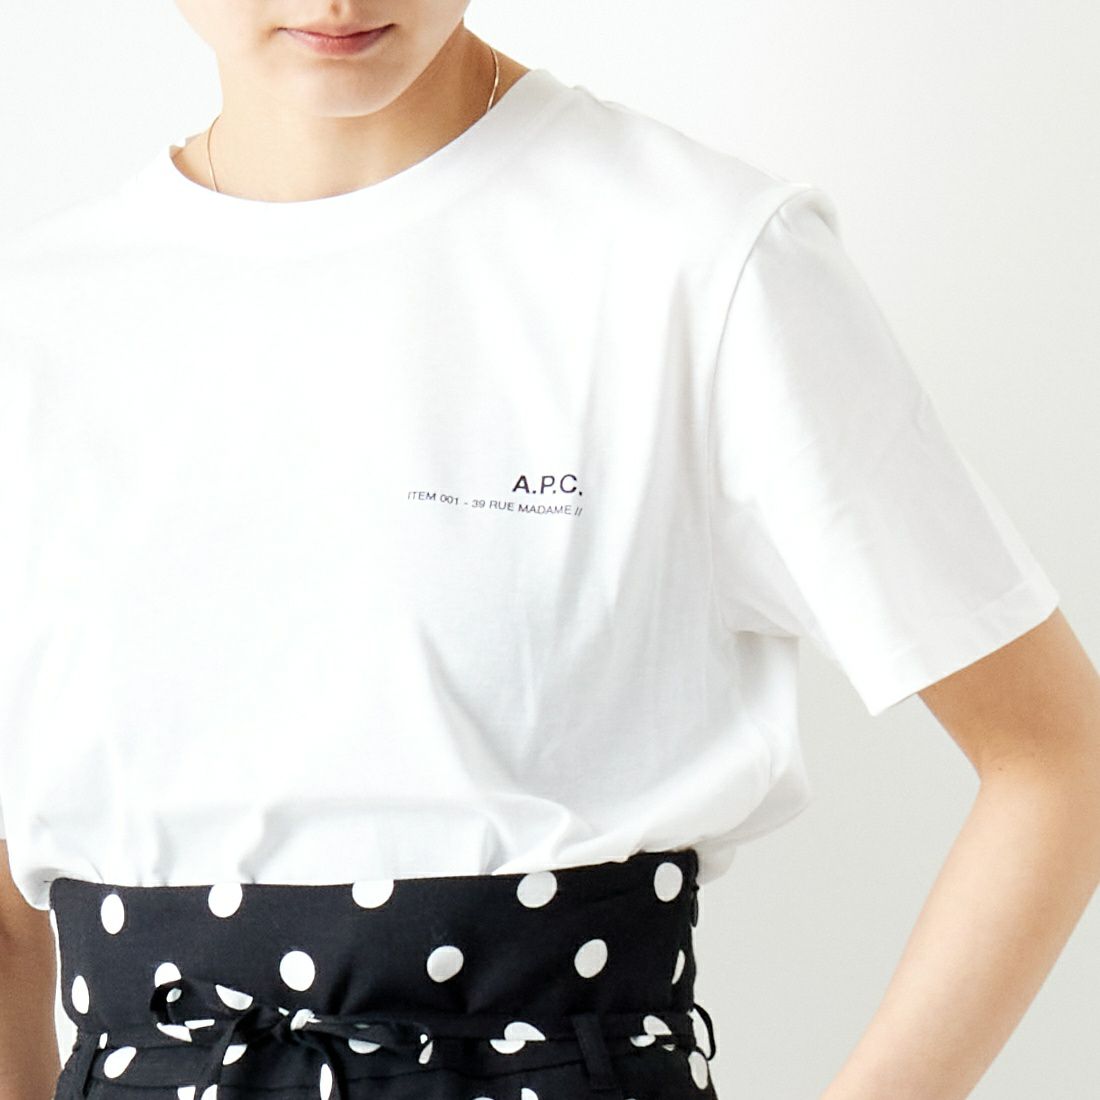 A.P.C. [アー・ペー・セー] ロゴプリントTシャツ [T-SHIRT-ITEM 